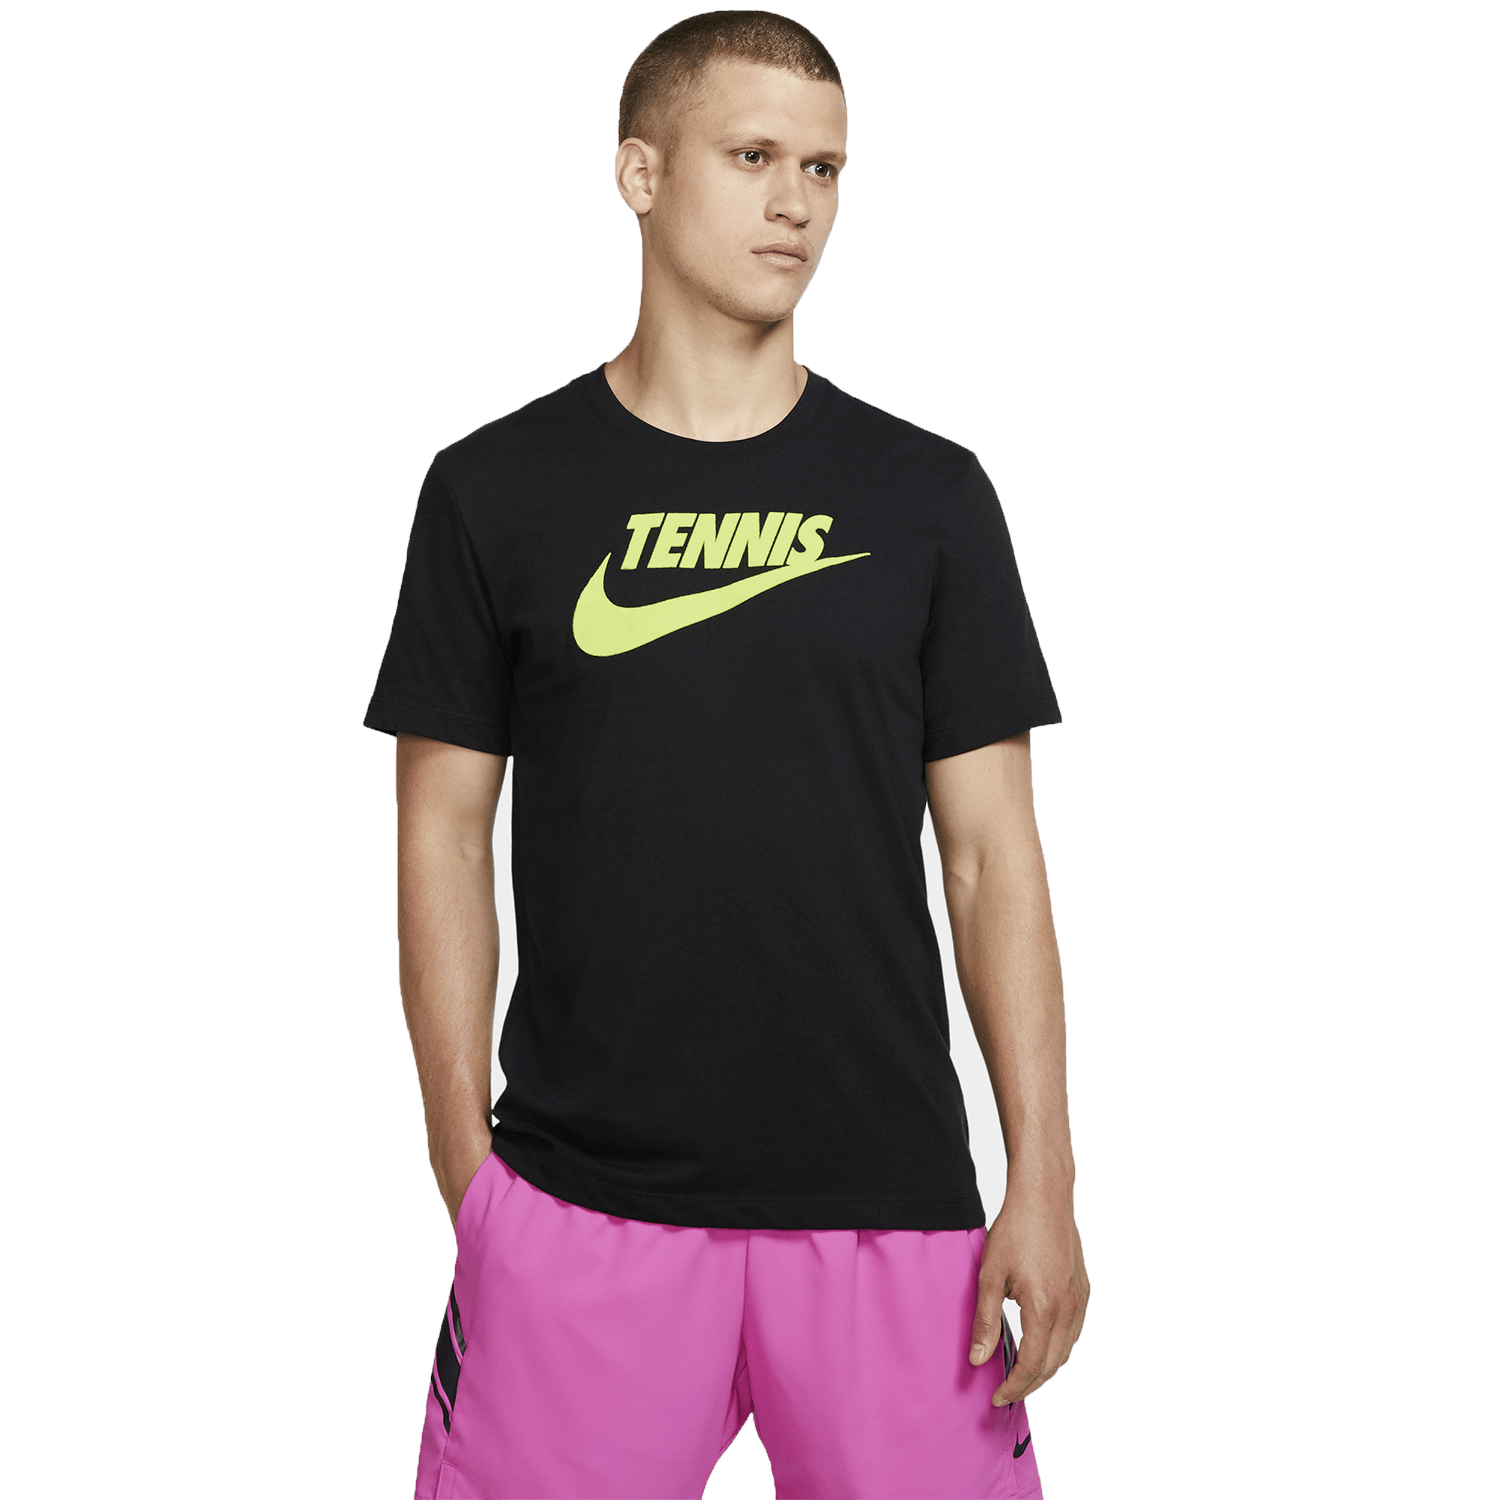 Buy > nike tennis shirt mens > in stock